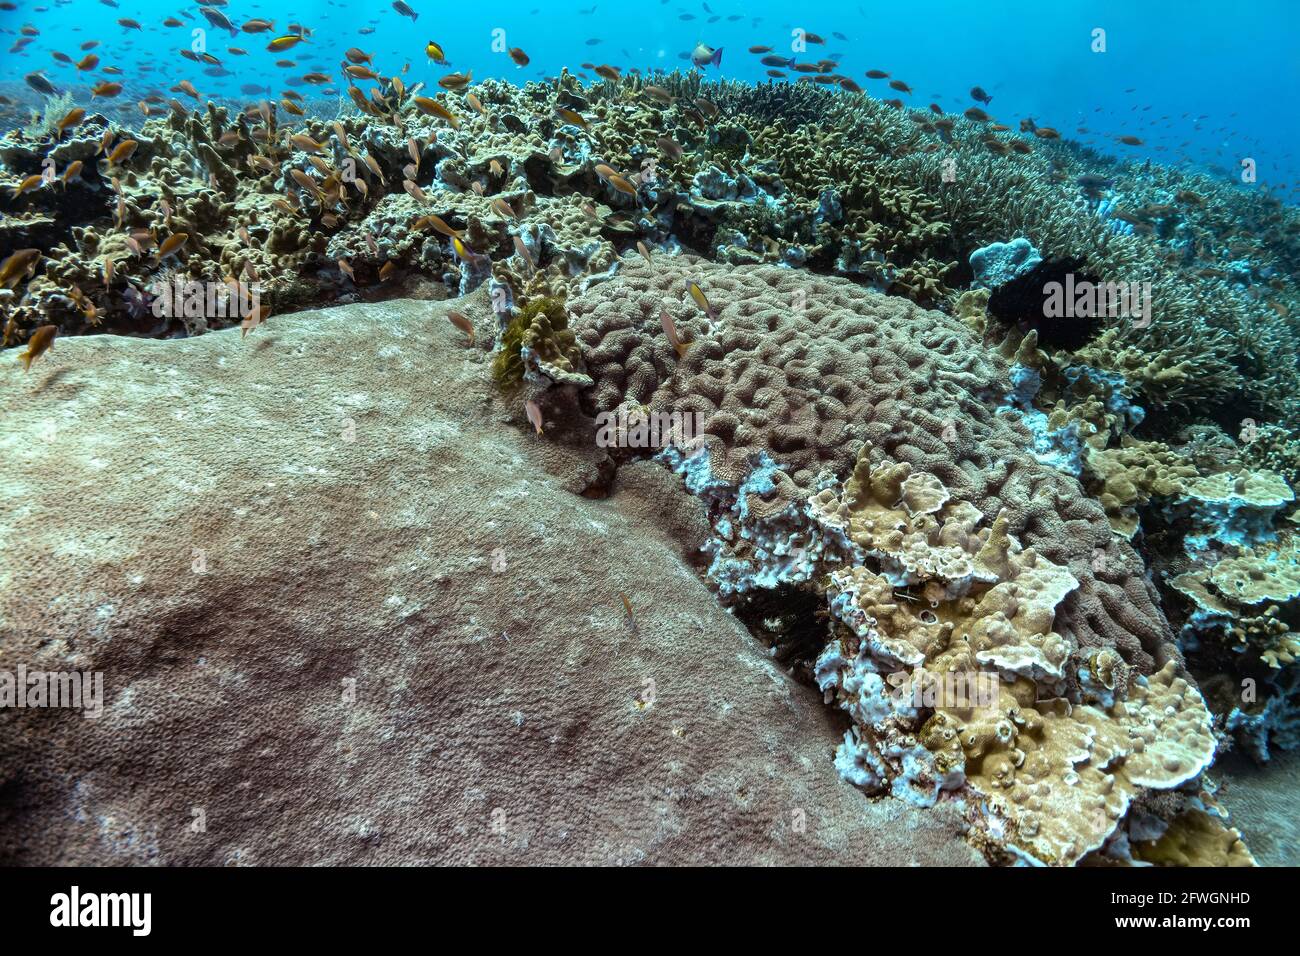 Wunderschöner Panoramablick über das tropische Riff in Indonesien, das von vielen verschiedenen Korallenarten bevölkert ist, sowohl weich als auch hart. Viele kleine Fische. Bild ta Stockfoto